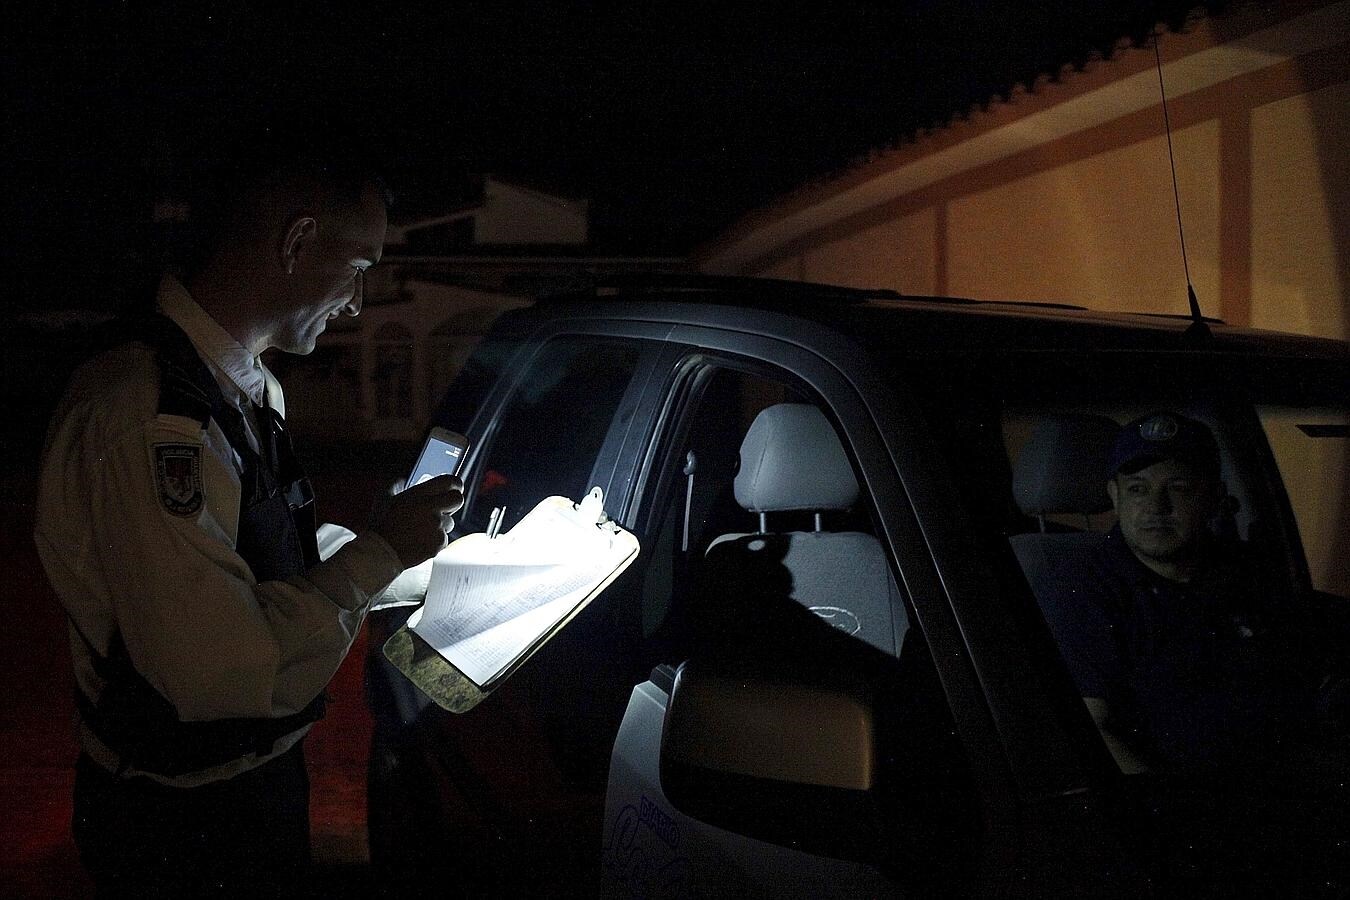 Un vigilante utiliza su teléfono móvil para iluminar un papel durante el apagón de luz en San Cristóbal, Venezuela